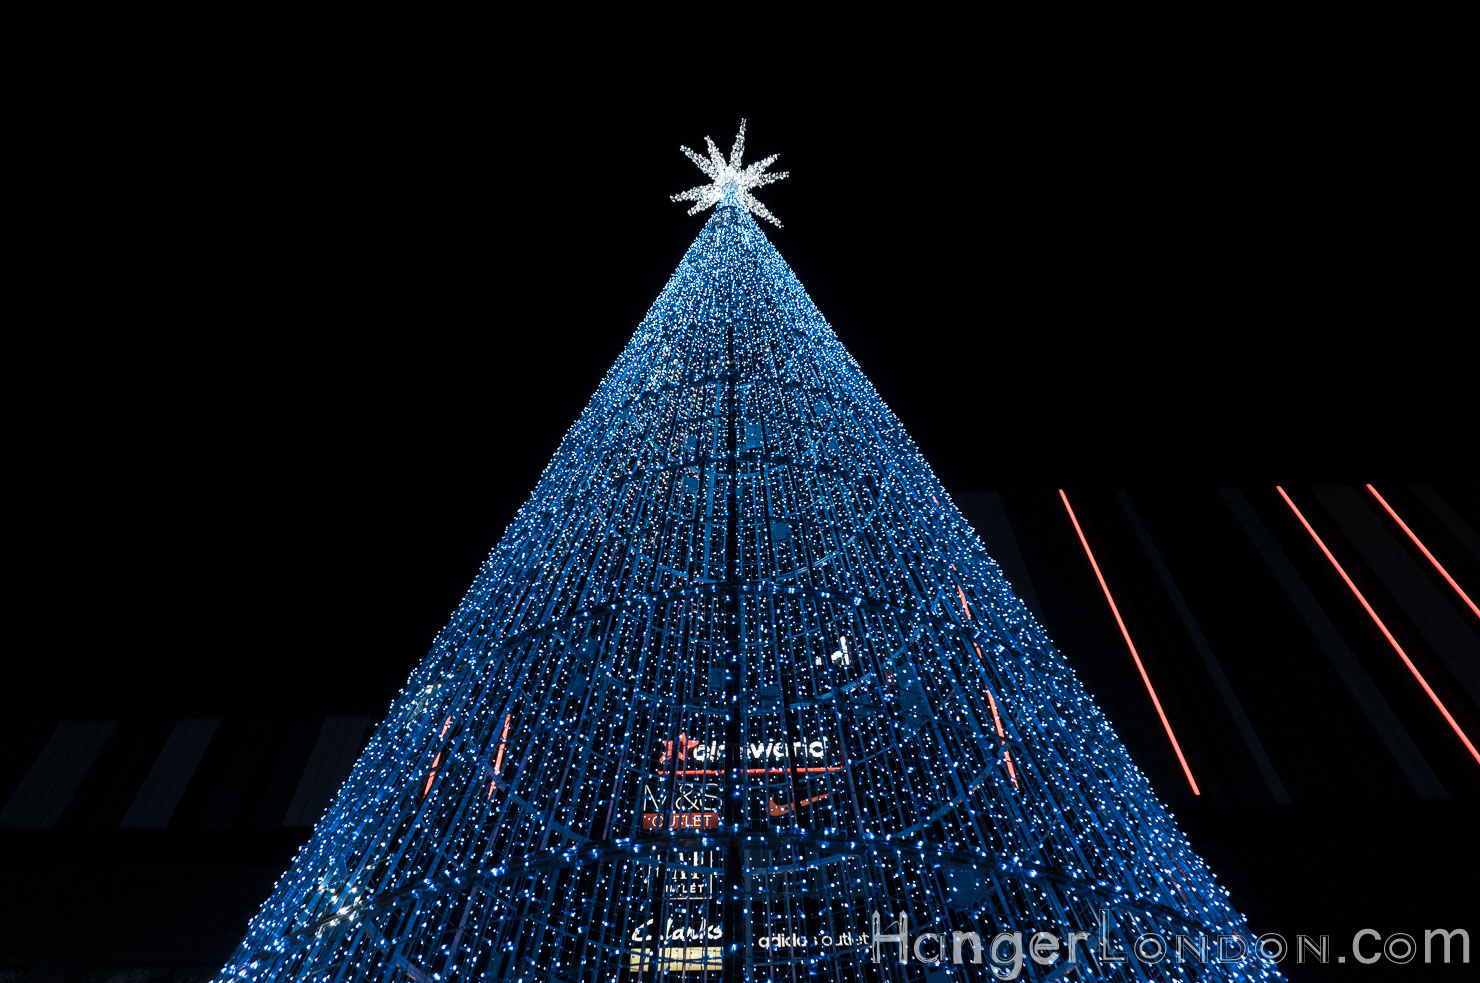 The hopeful tree Wembley park LED lit